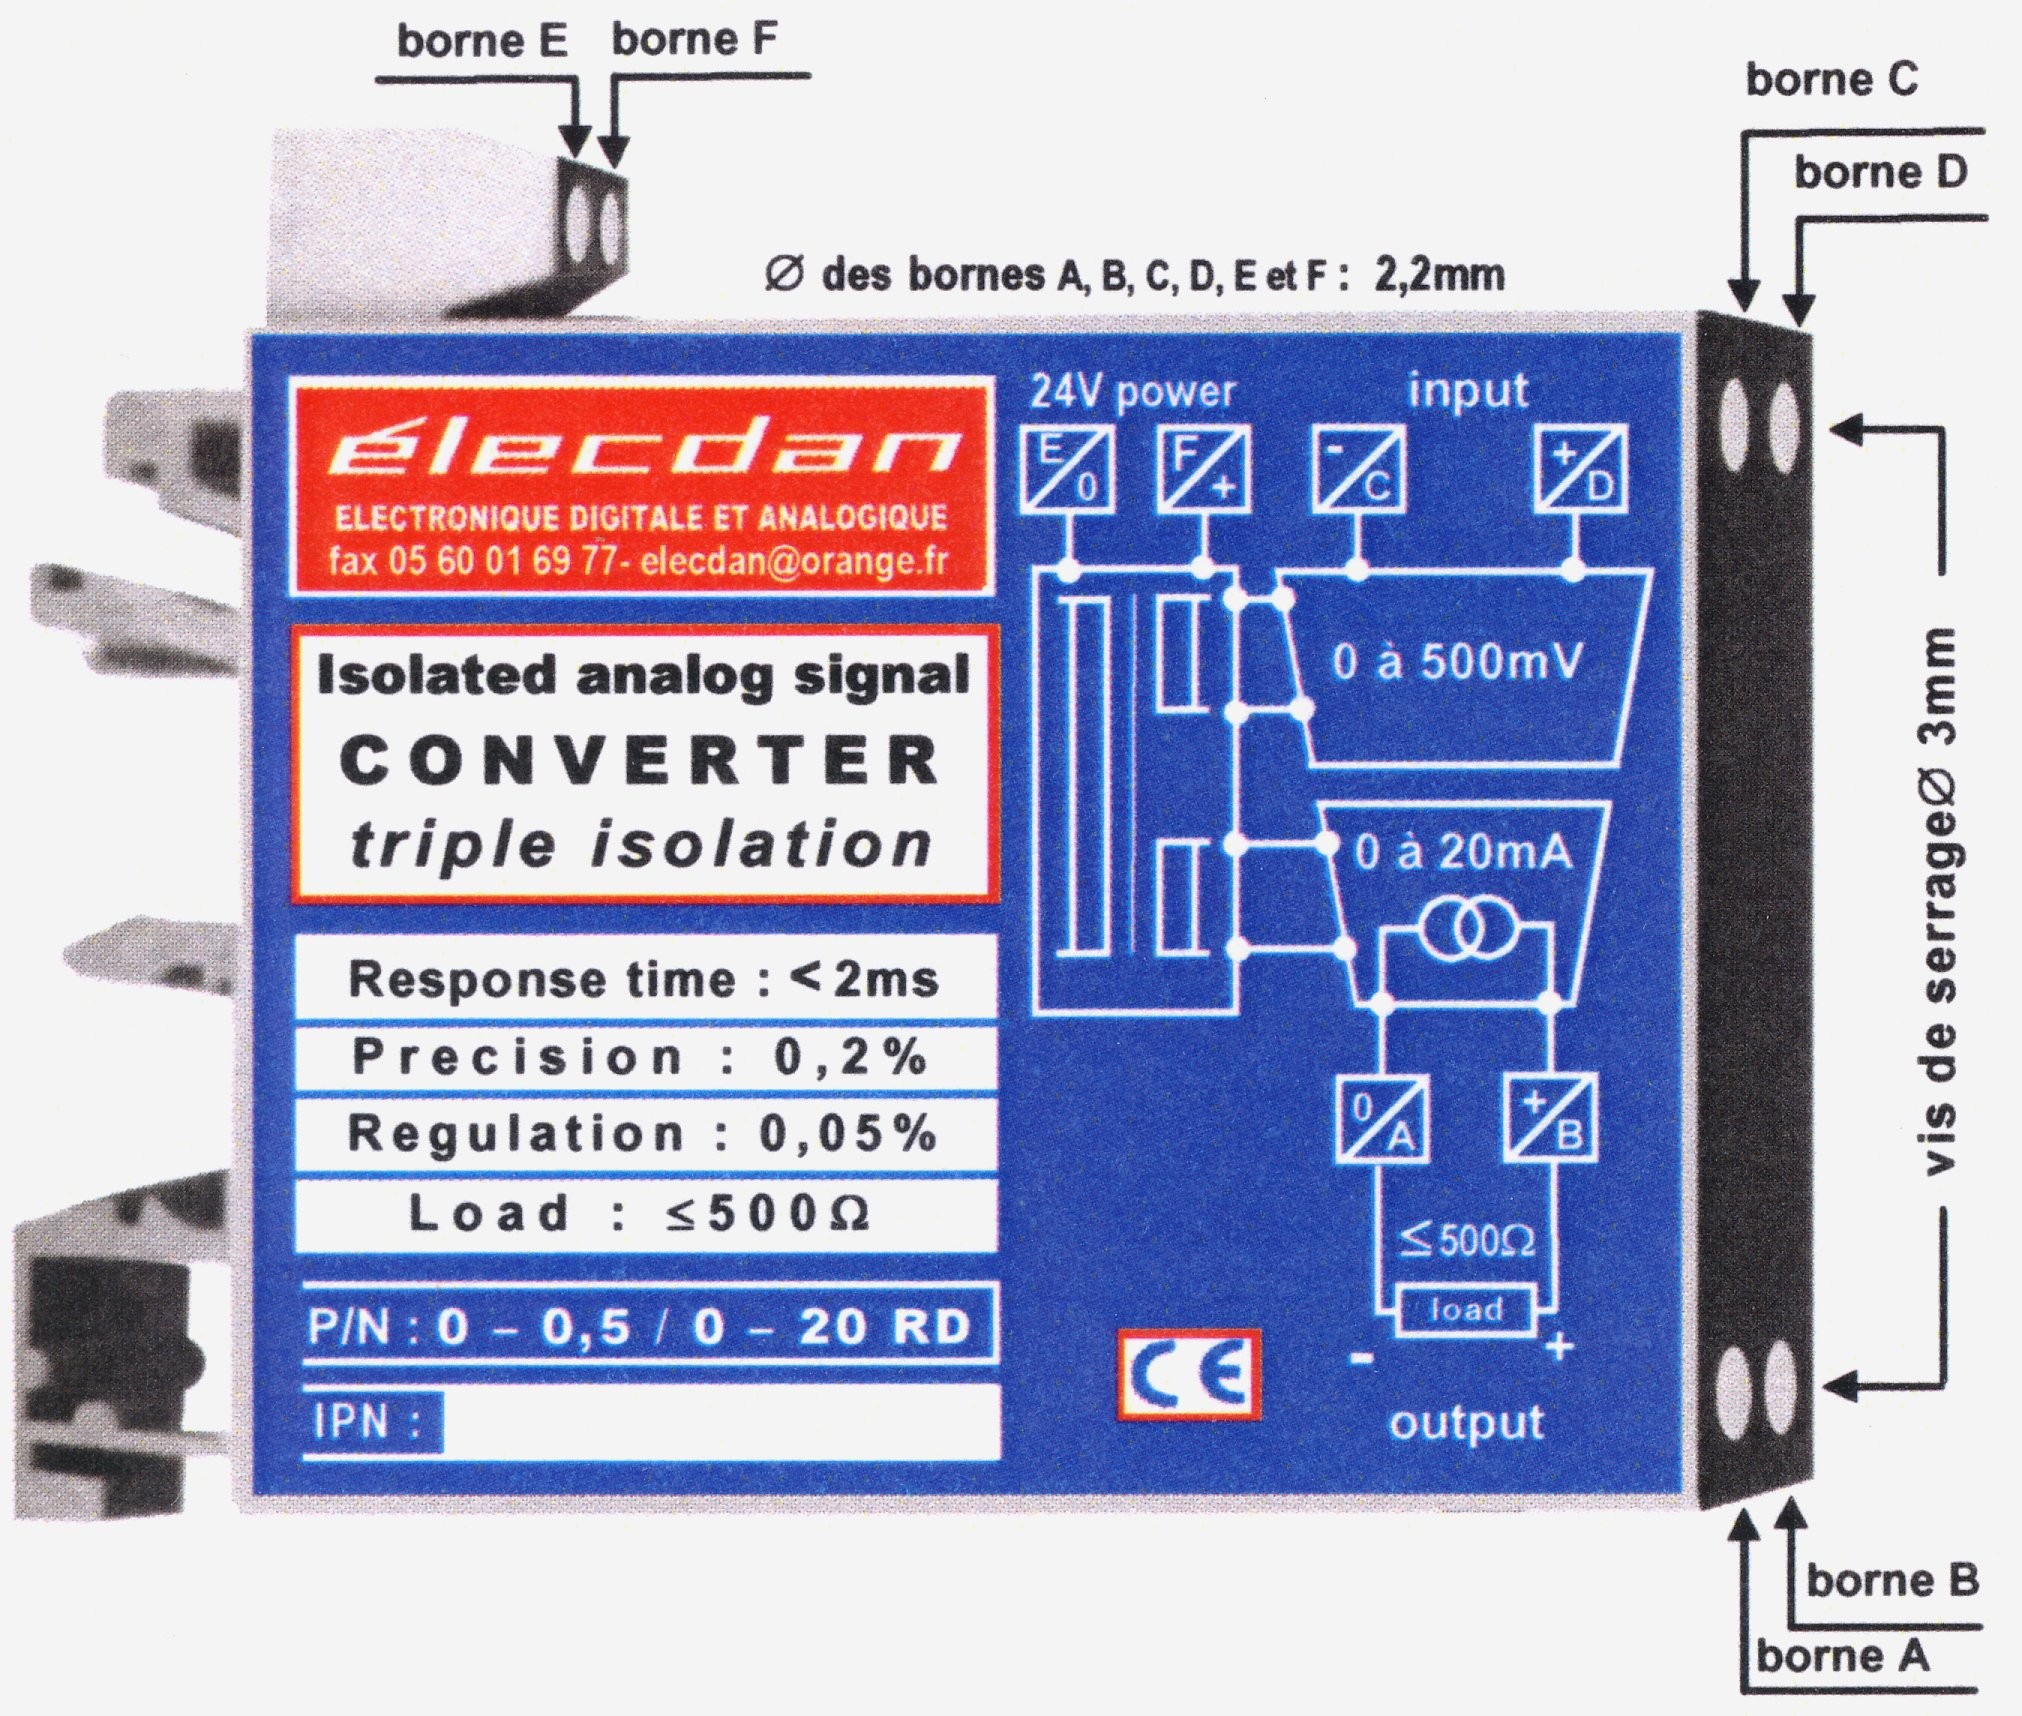 Boîtier pour RAIL DIN : 66 x 53 x 12.5 mm Réf. 0-0.5 / 0-20 RD